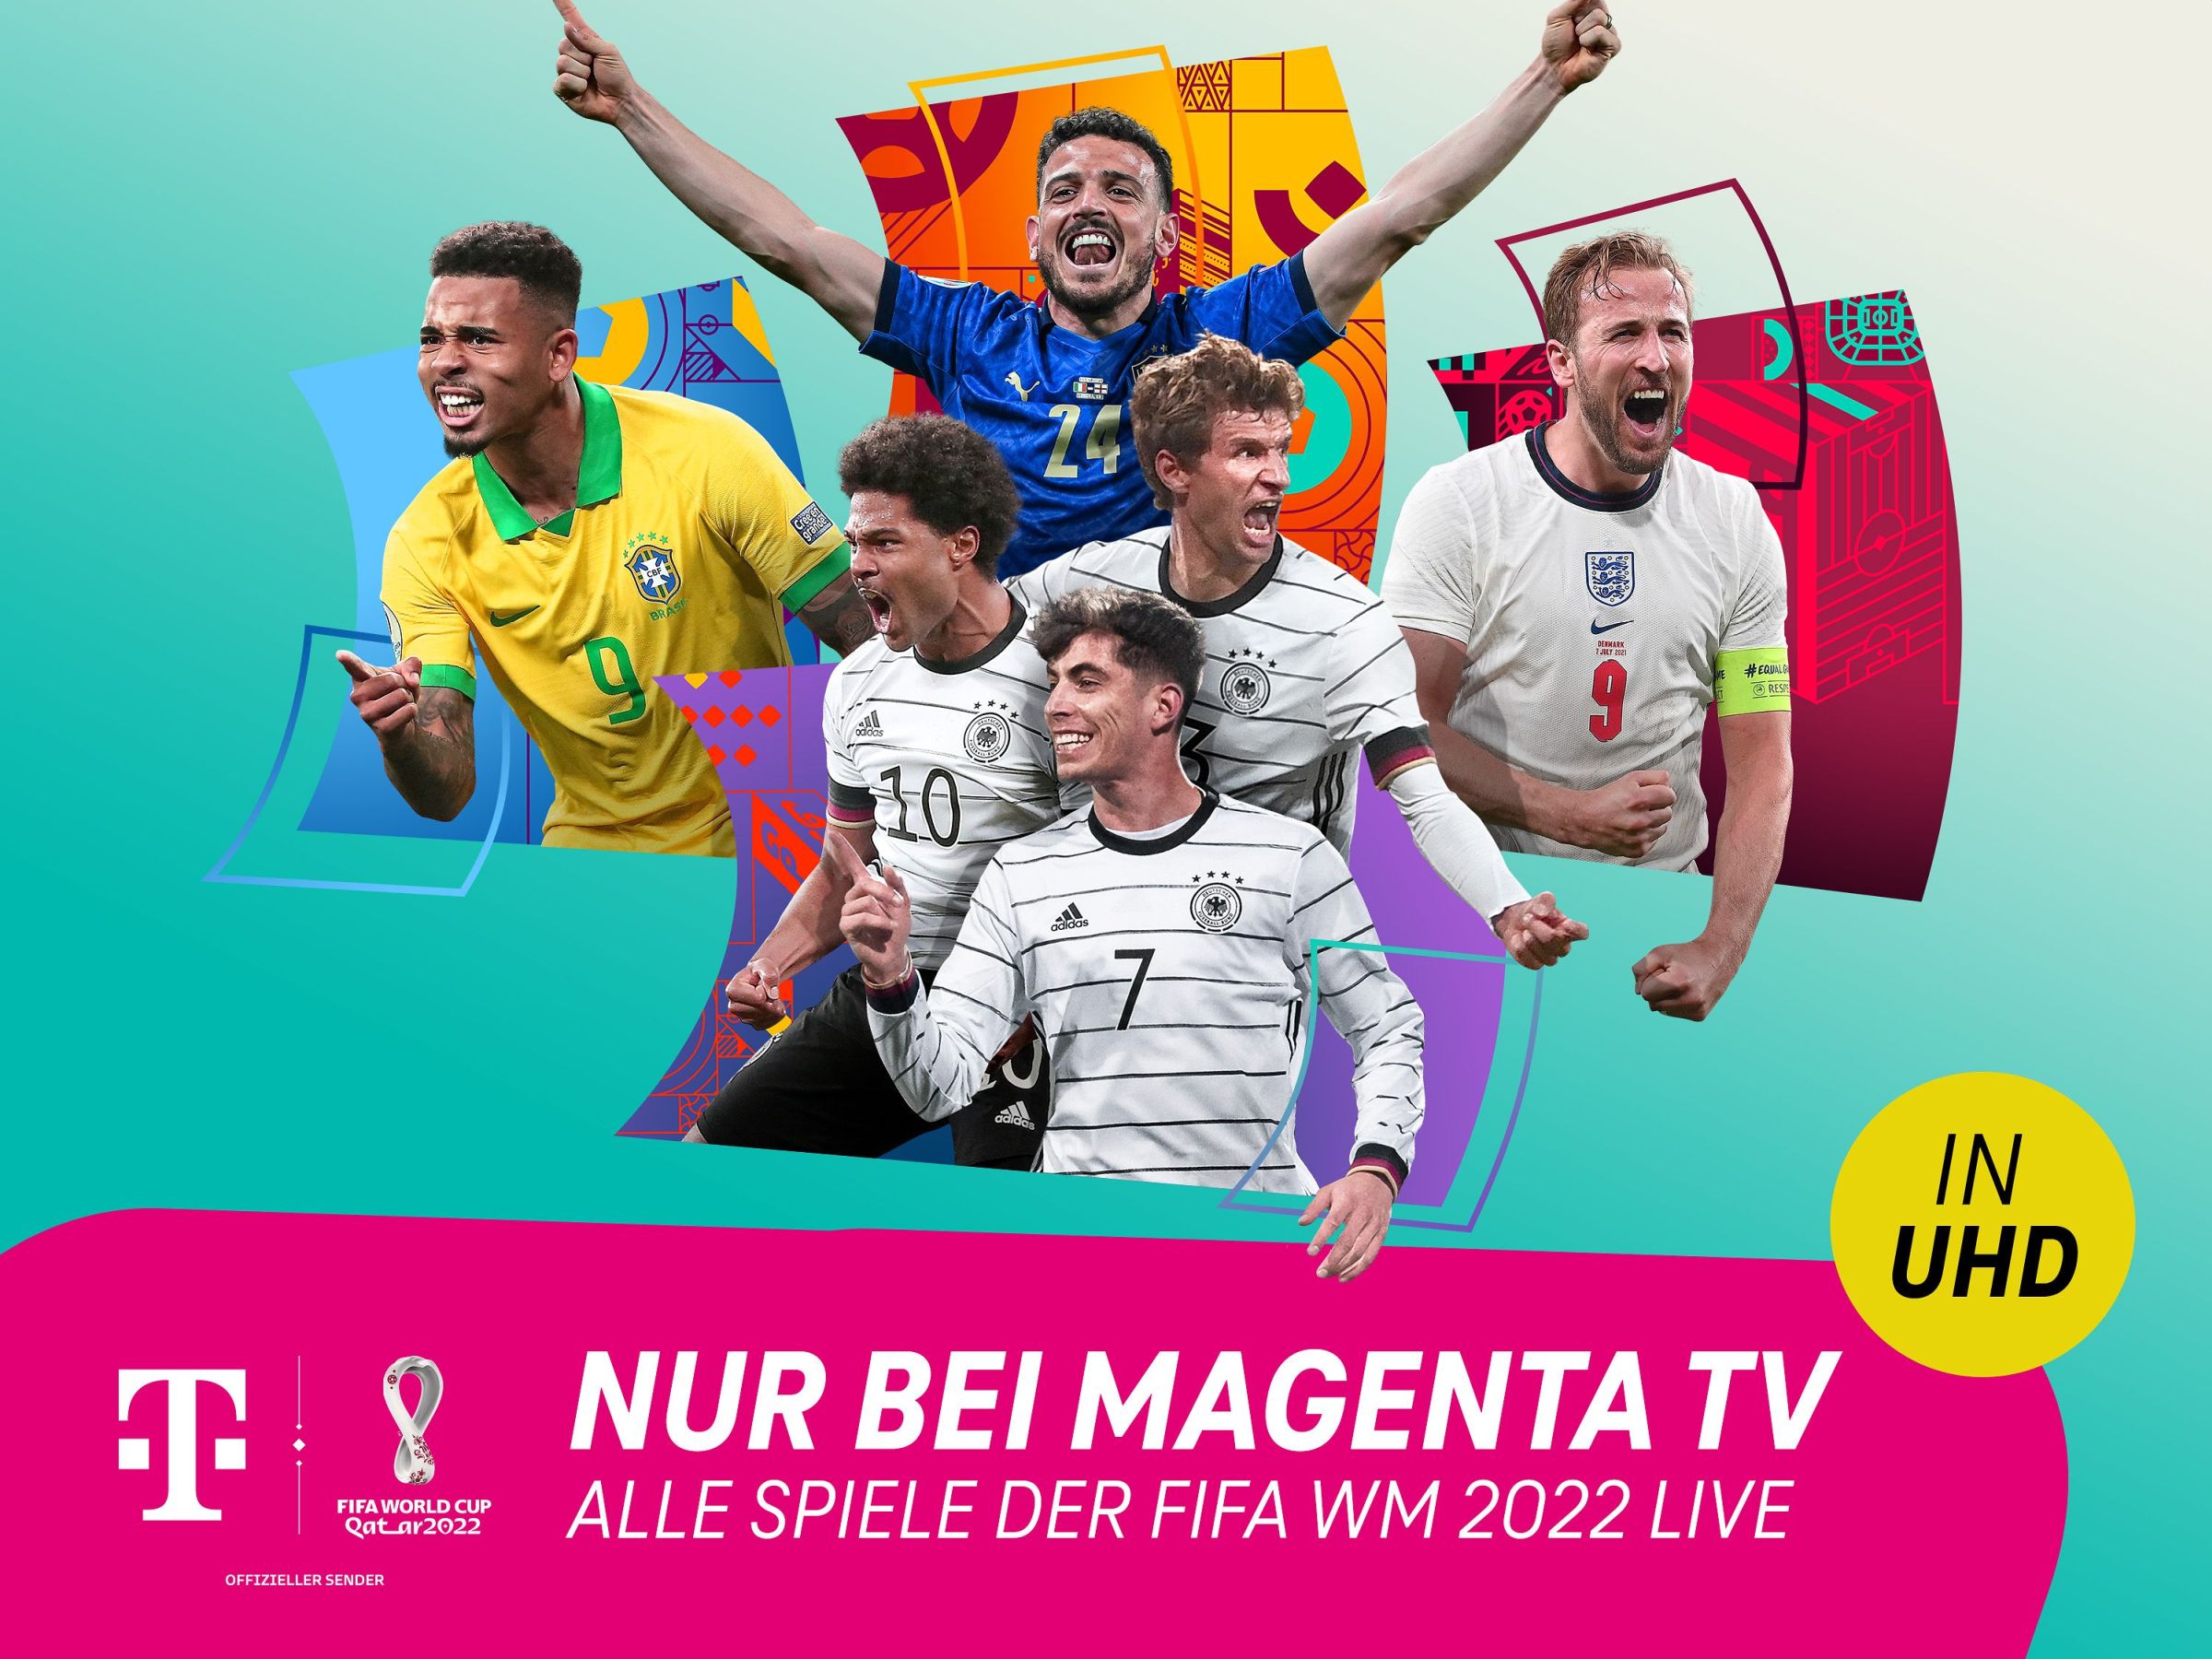 #FIFA WM 2022: Erste Details zur Live-Übertragung der Fußball-WM – auch in UHD